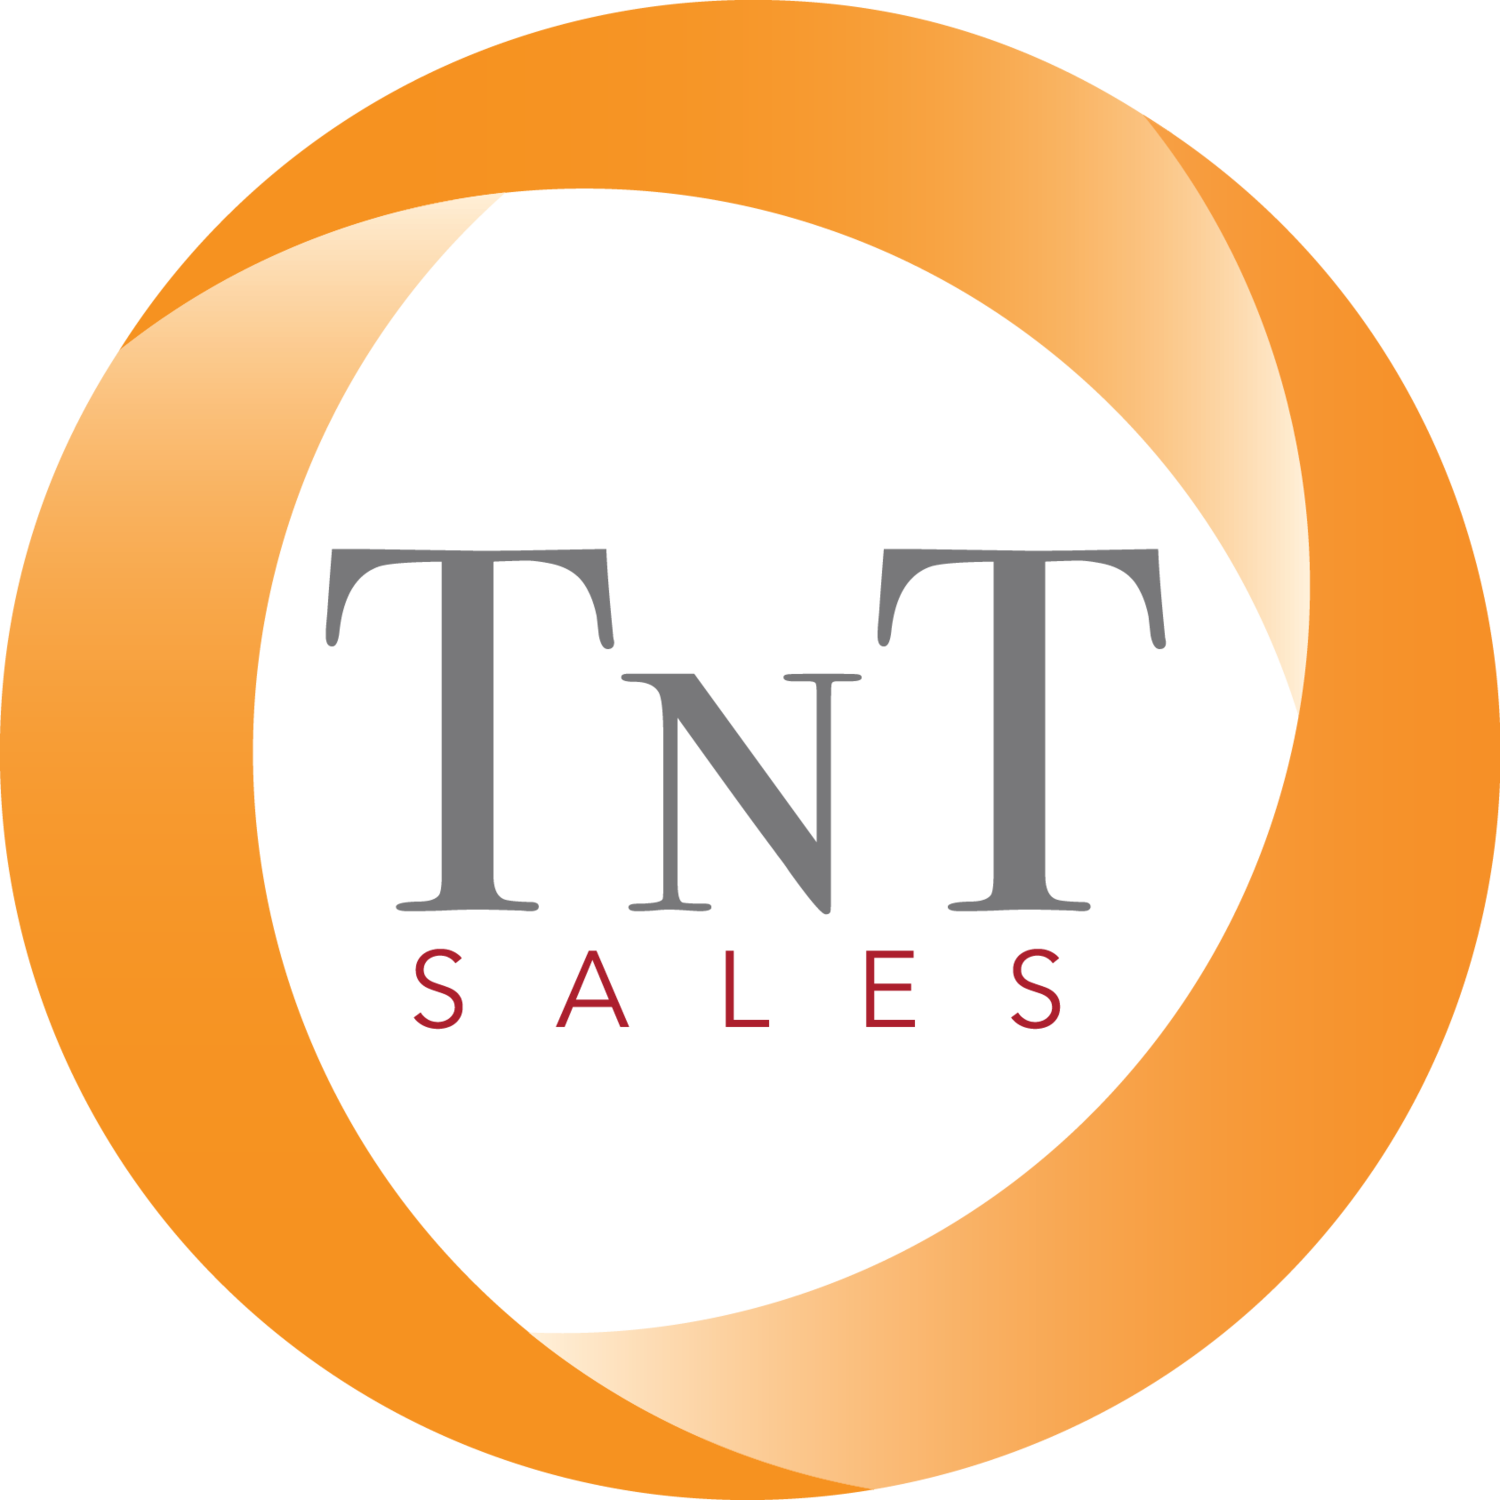 TnT Sales